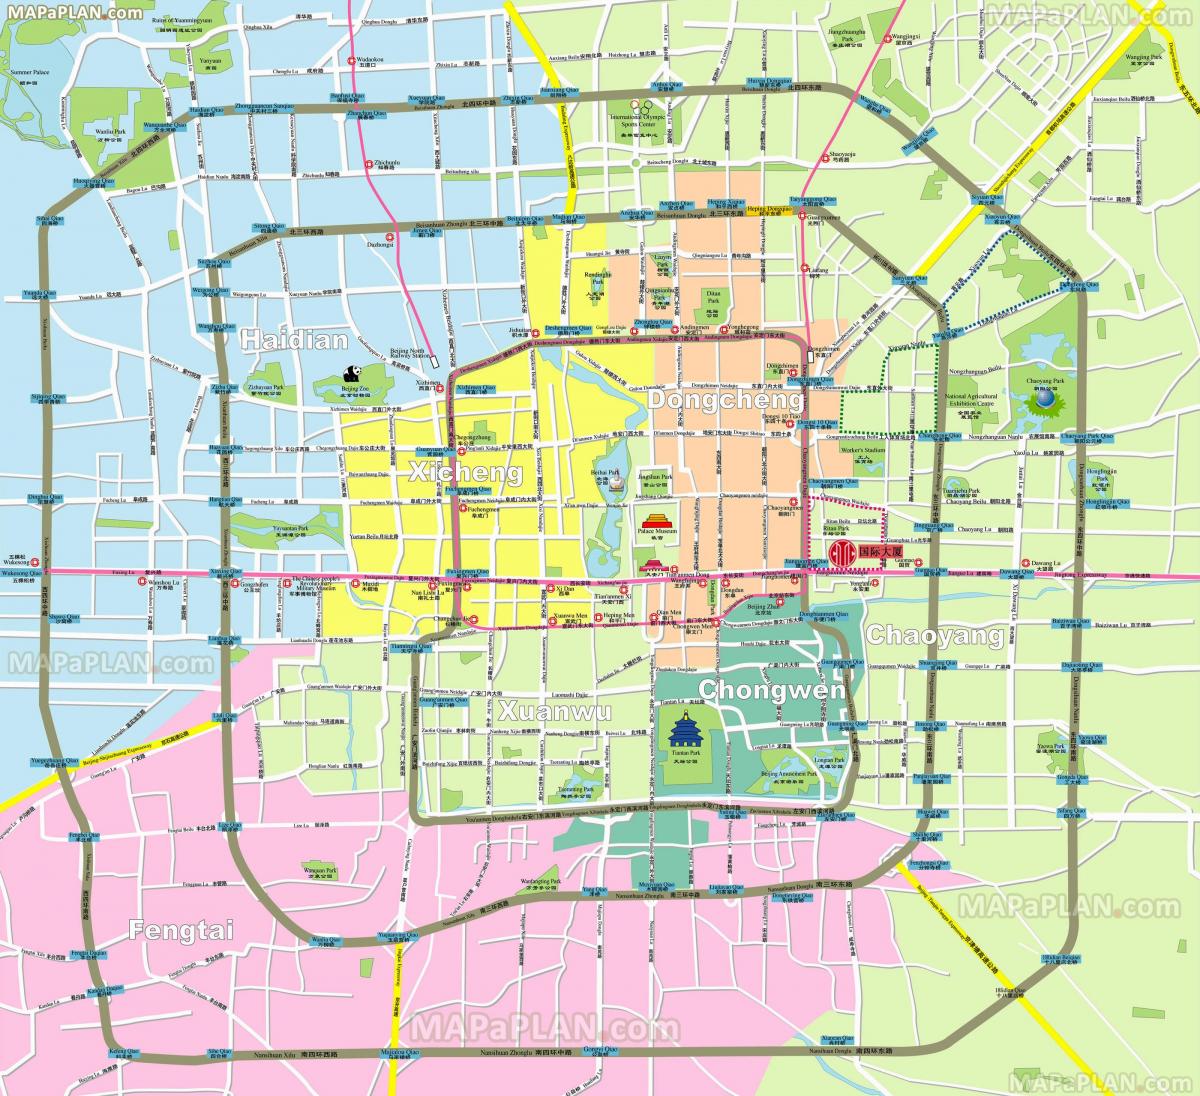 Mapa dos bairros de Pequim (Pequim)